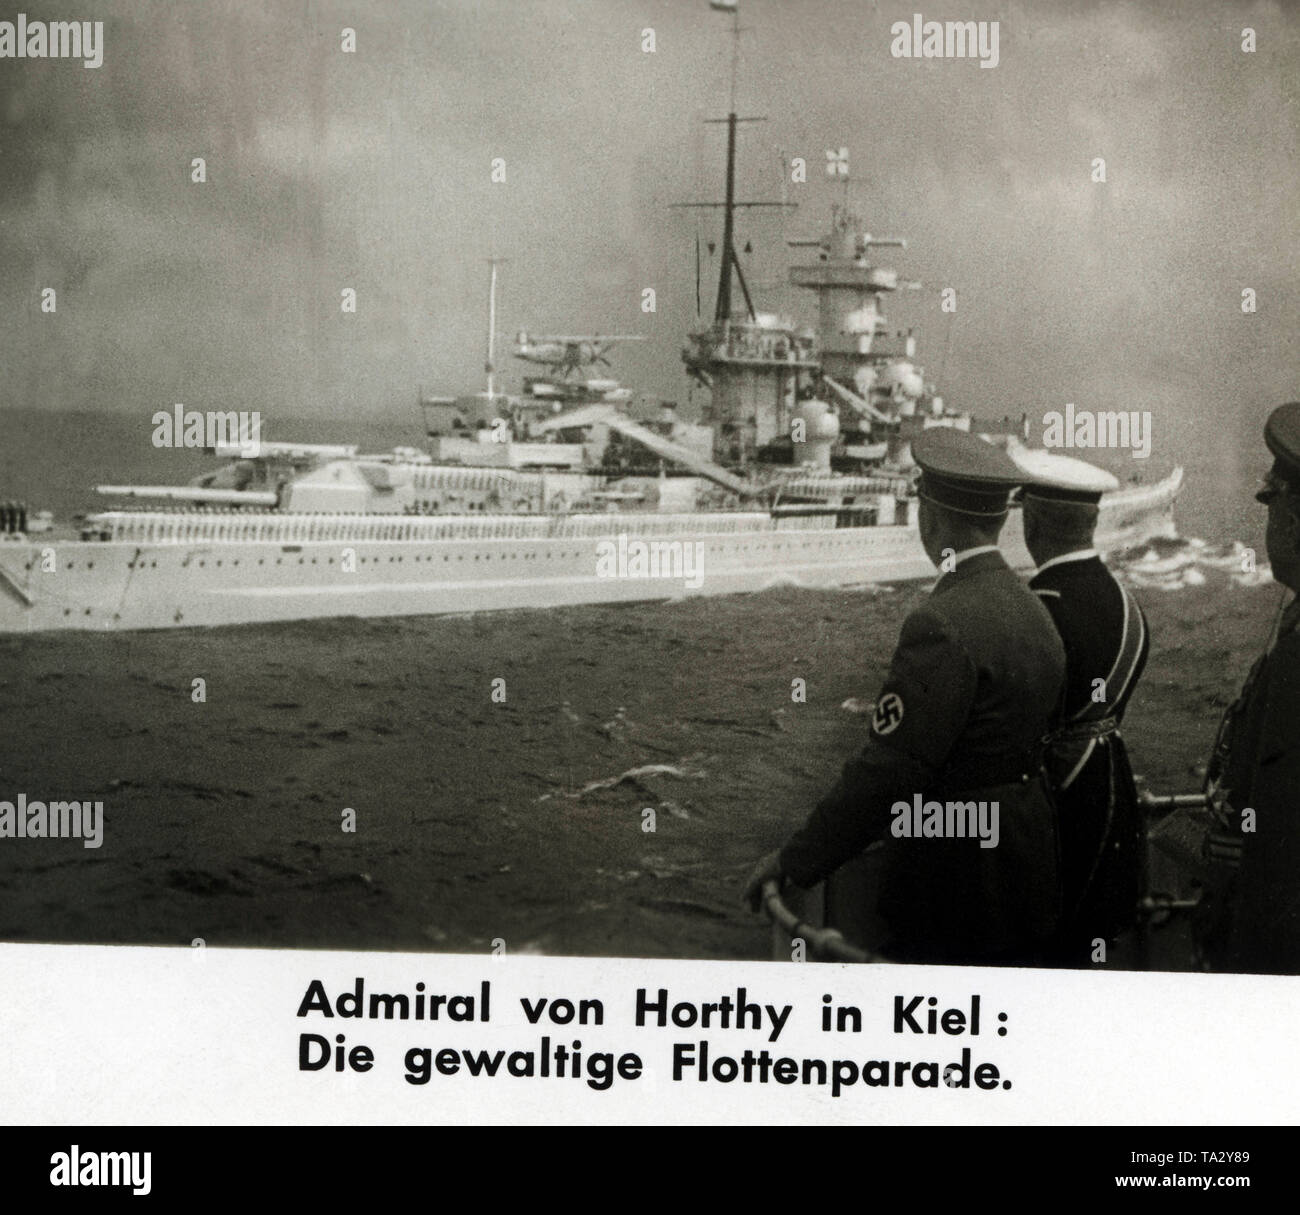 Revisión de la flota en honor de la visita de Adolf Hitler y su invitado, el almirante Horthy, el regente de Hungría. La imagen muestra el paso acorazado 'Gneisenau', los marineros están de pie en el desfile de la formación. El desfile de la flota tuvo lugar cerca del fiordo de Kiel. La foto muestra a Adolf Hitler y Horthy, es un filmstill desde un Ufa-Wochenschau ( Revisión semanal). Foto de stock